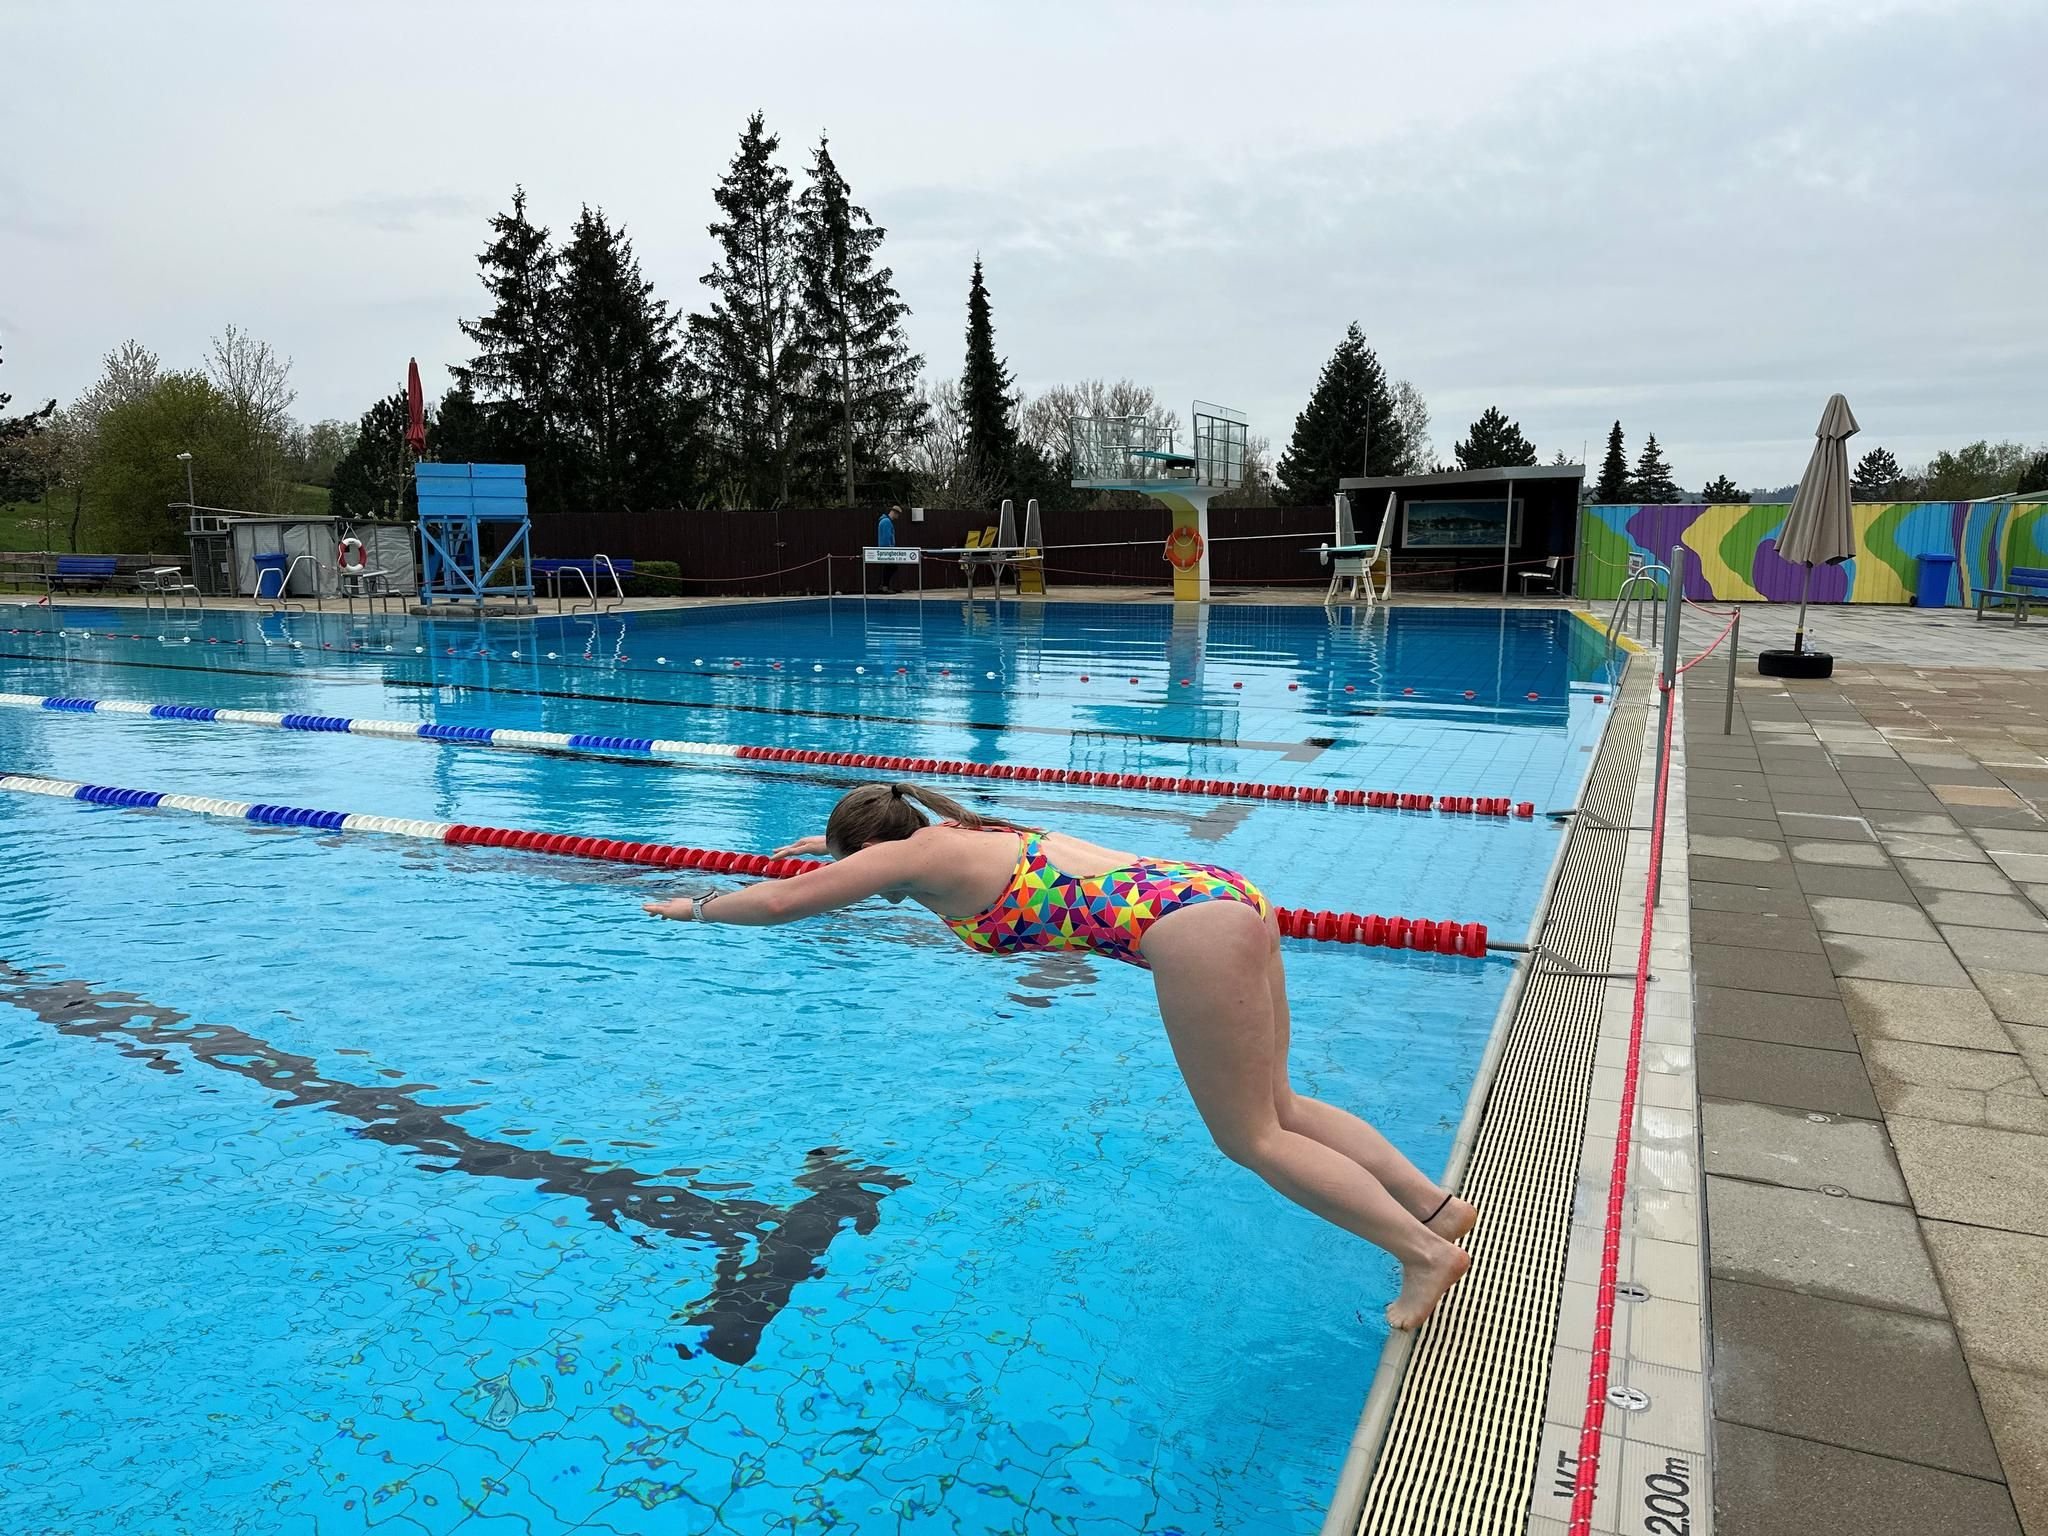 Freibad Spiesel: Erste mutige Schwimmer eröffnen Freibadsaison